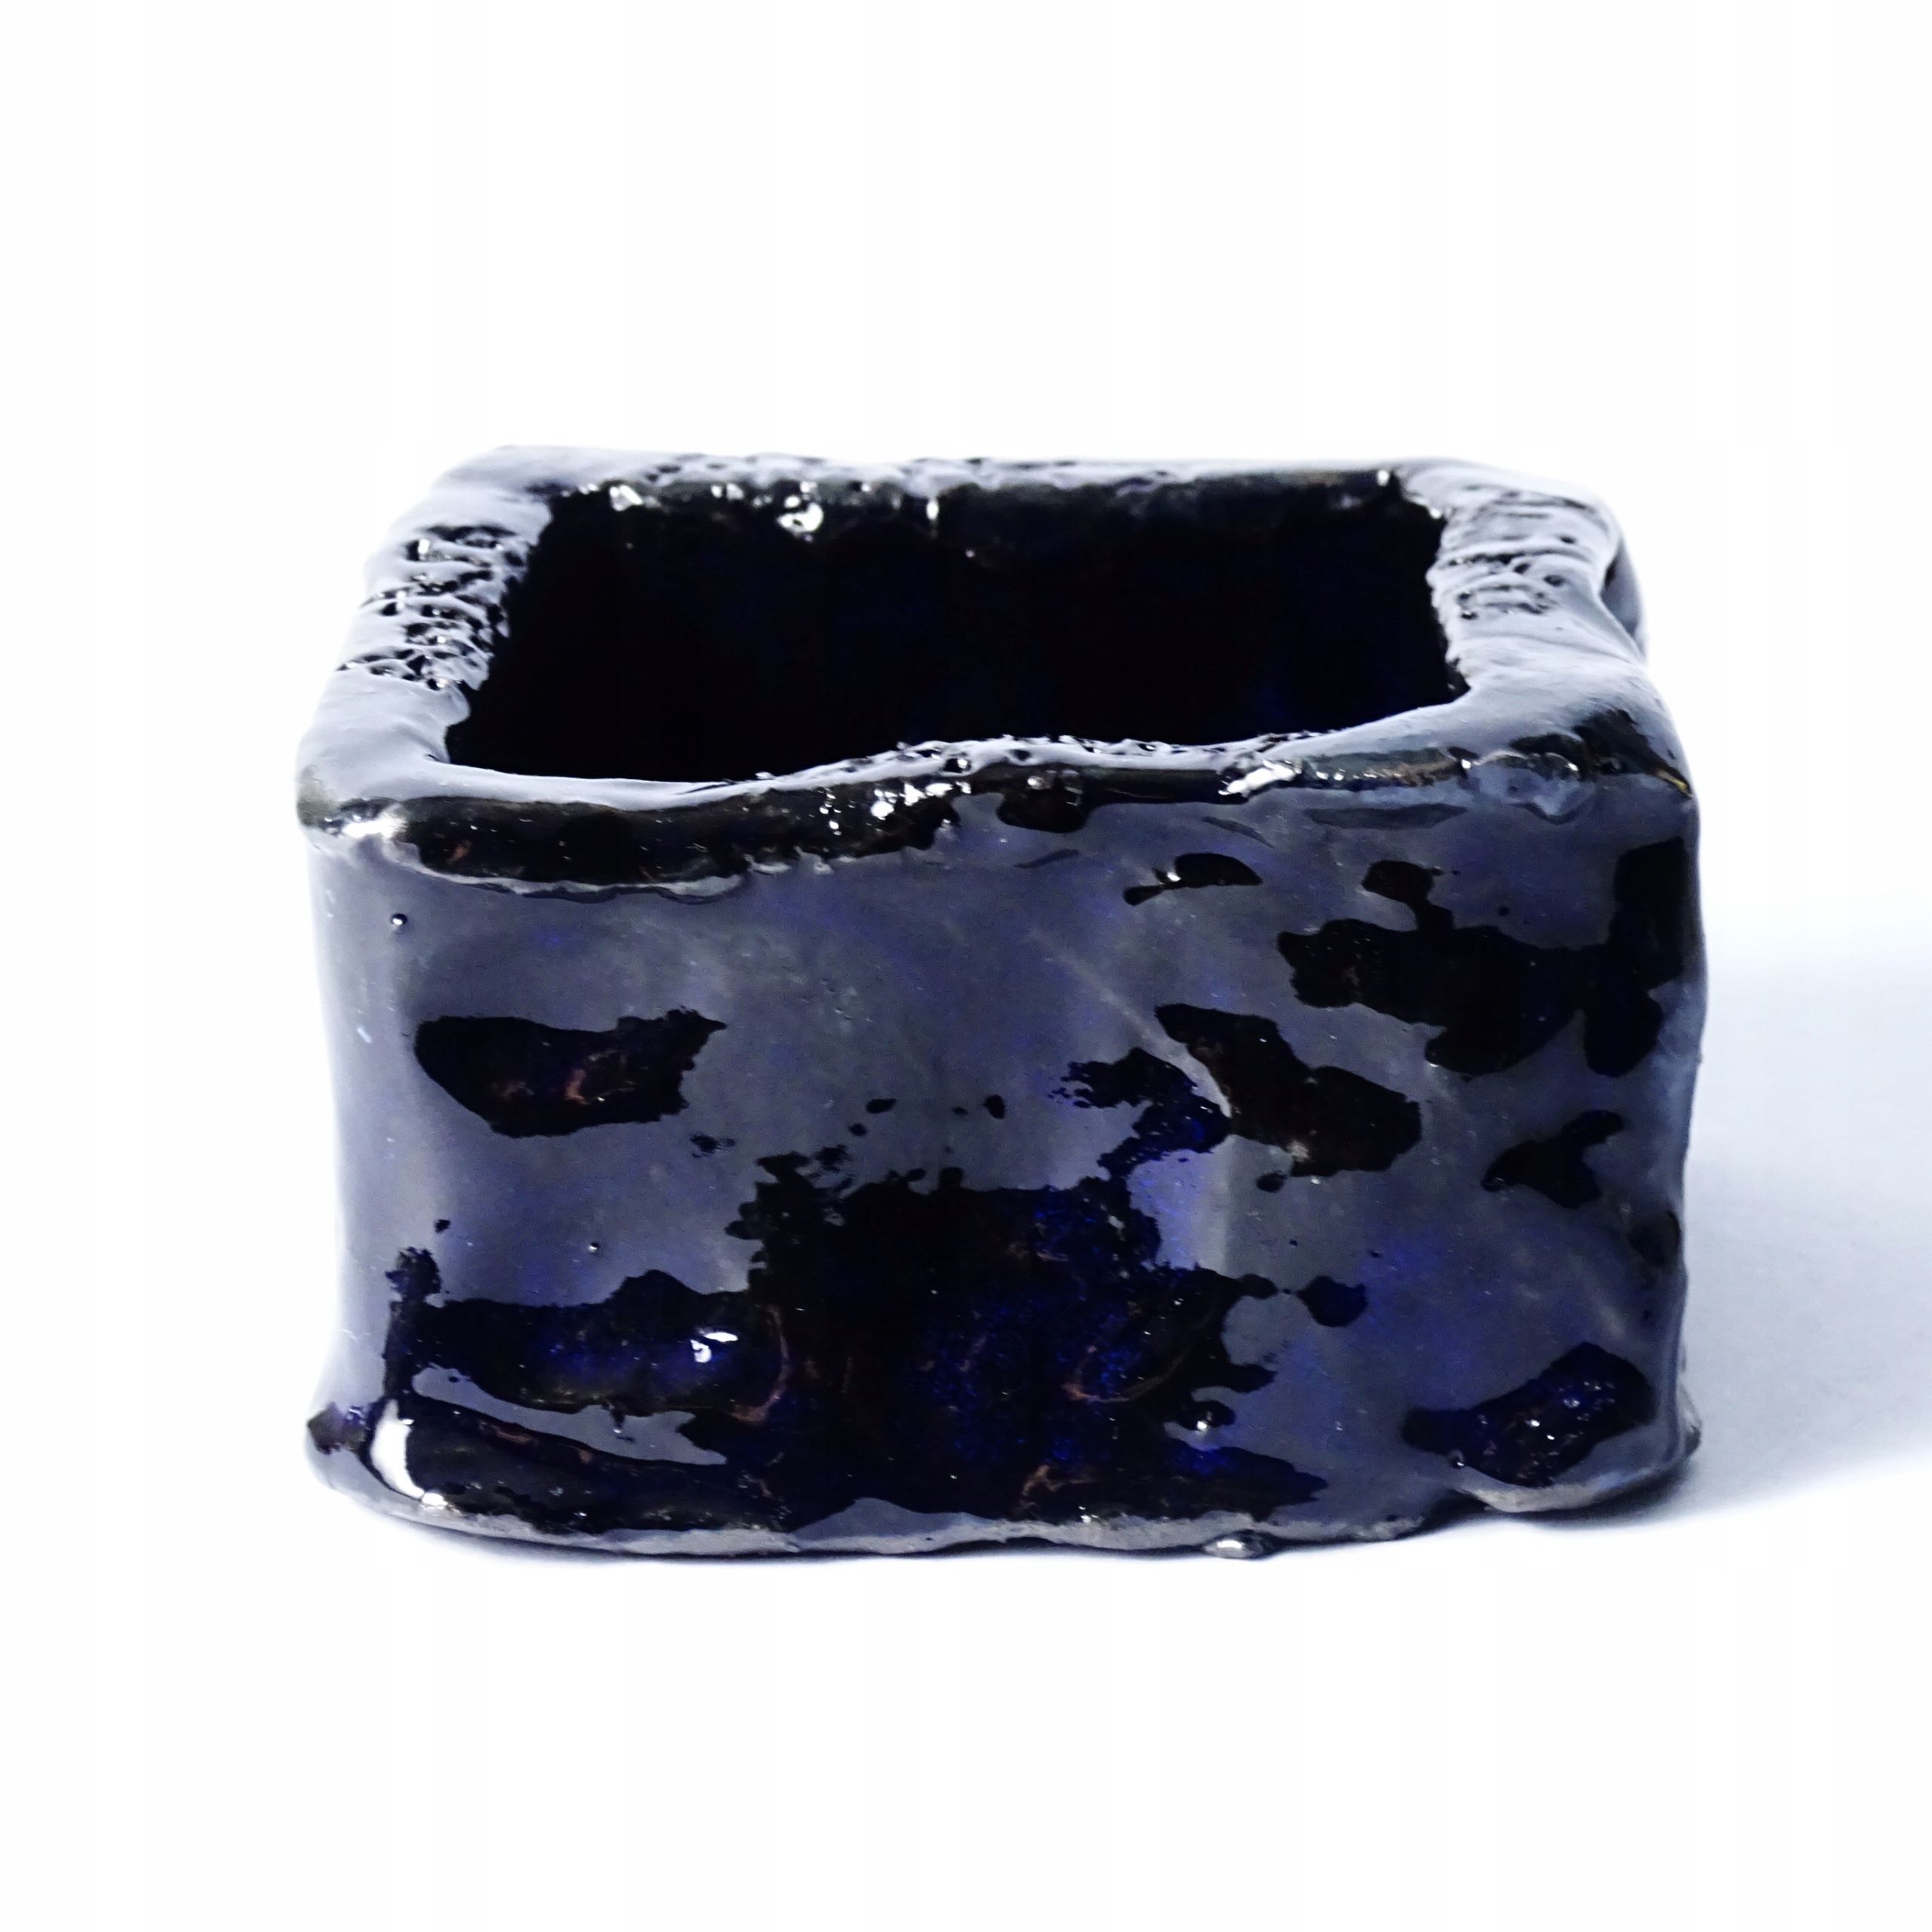 ceramika autorska kobaltowy pojemnik miseczka naczynie